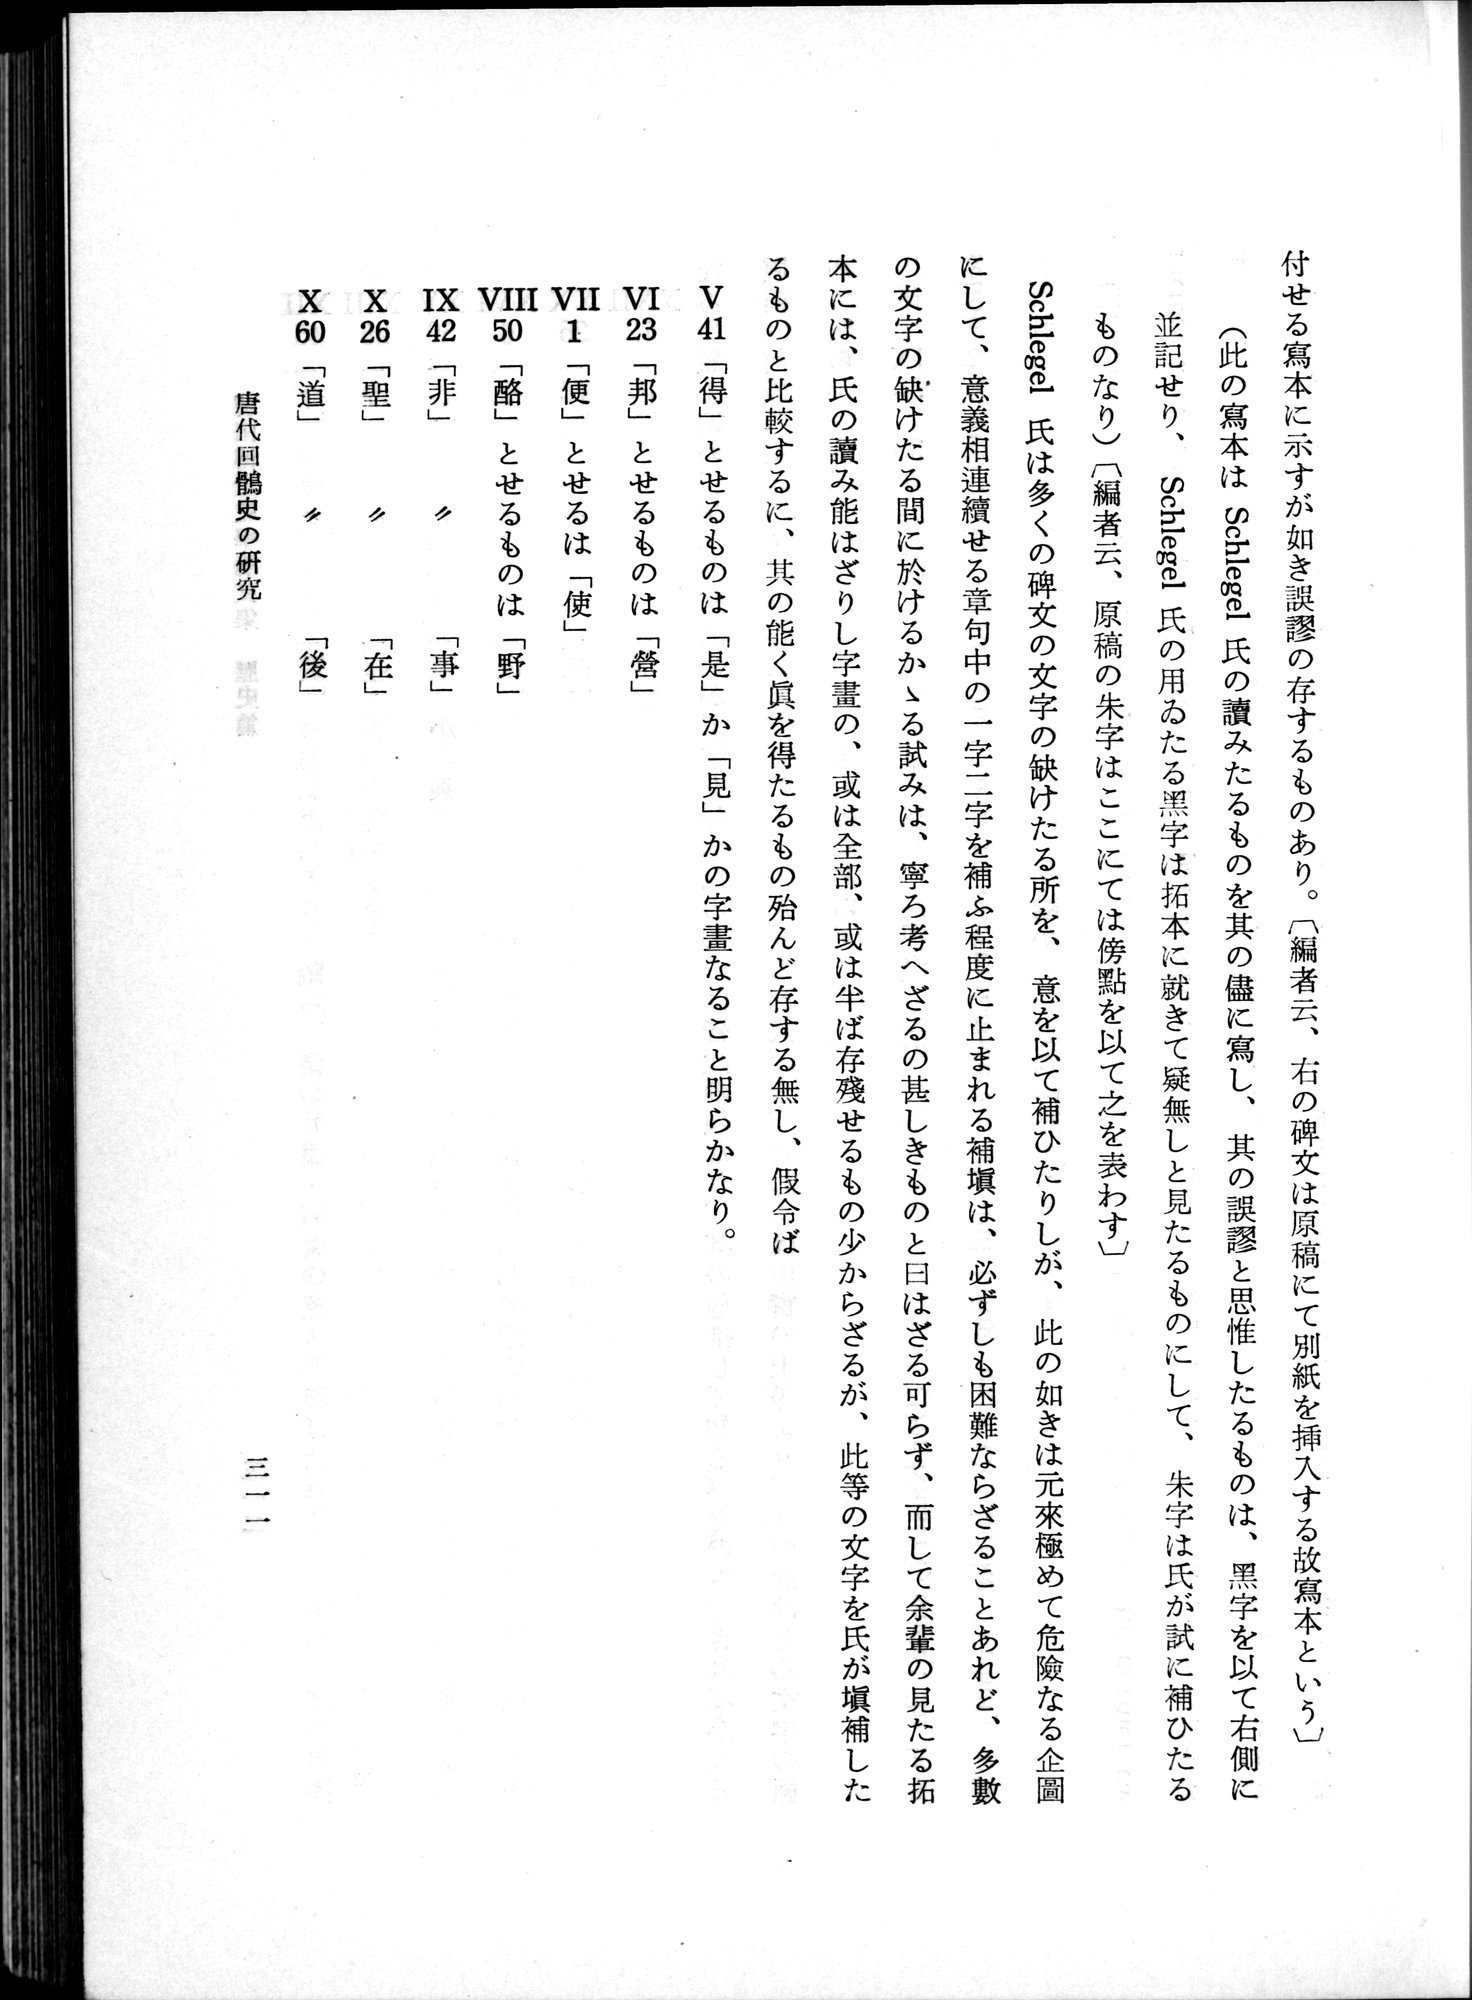 羽田博士史学論文集 : vol.1 / Page 349 (Grayscale High Resolution Image)